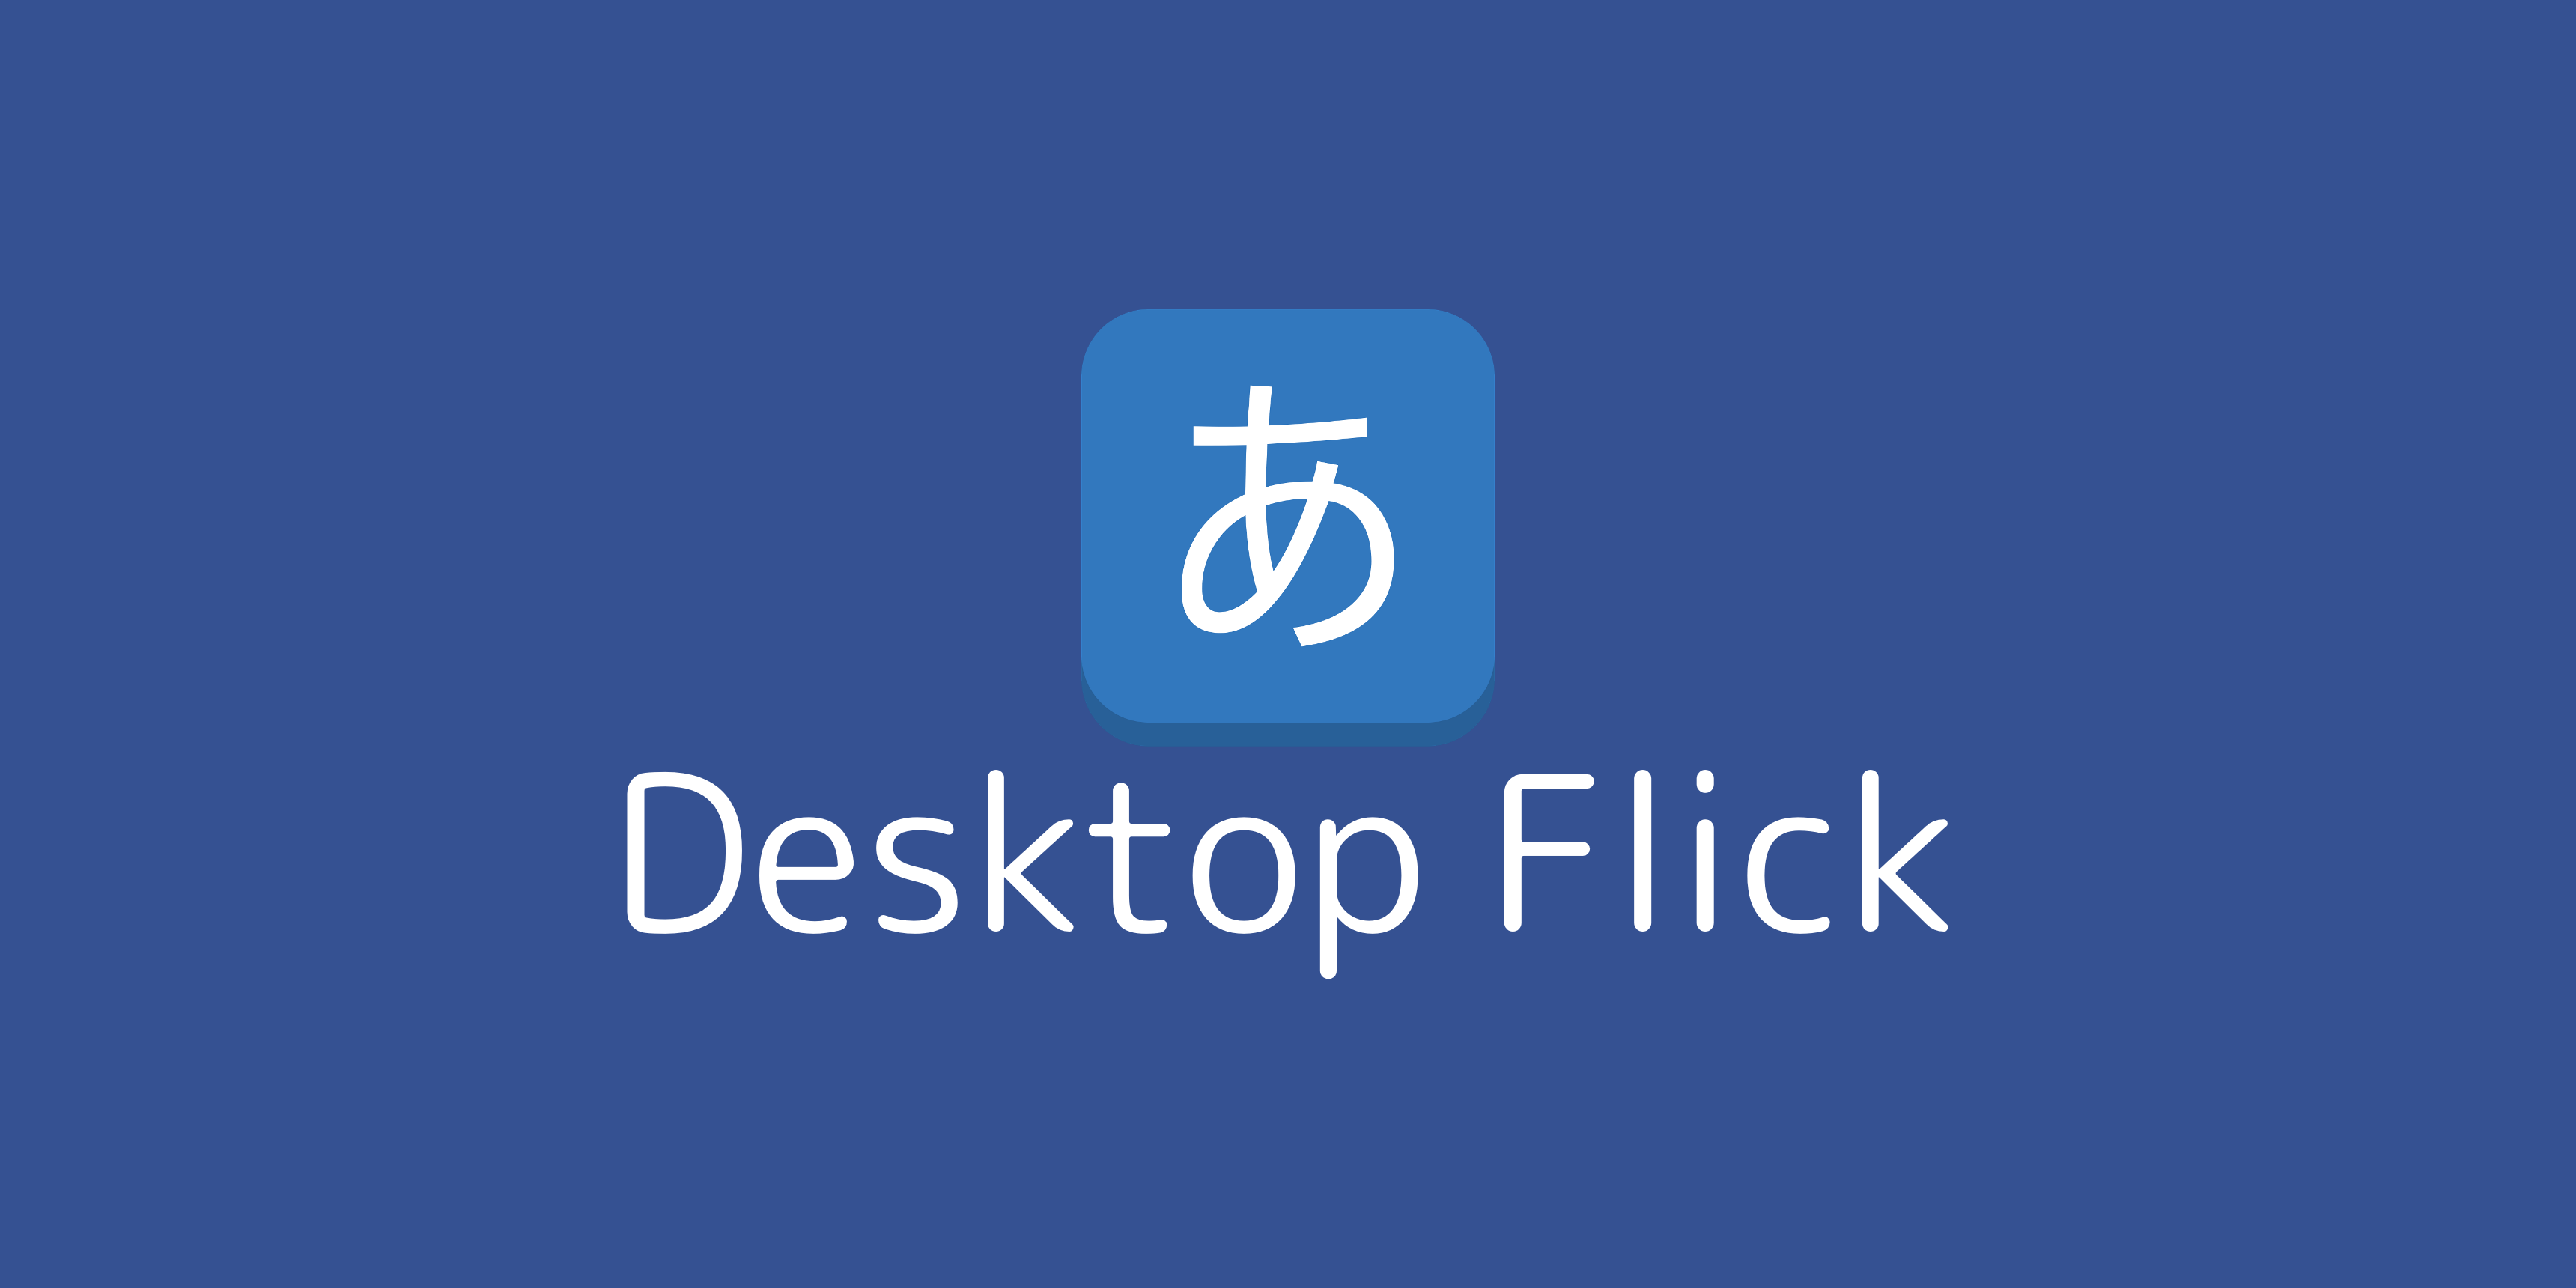 Desktop Flick